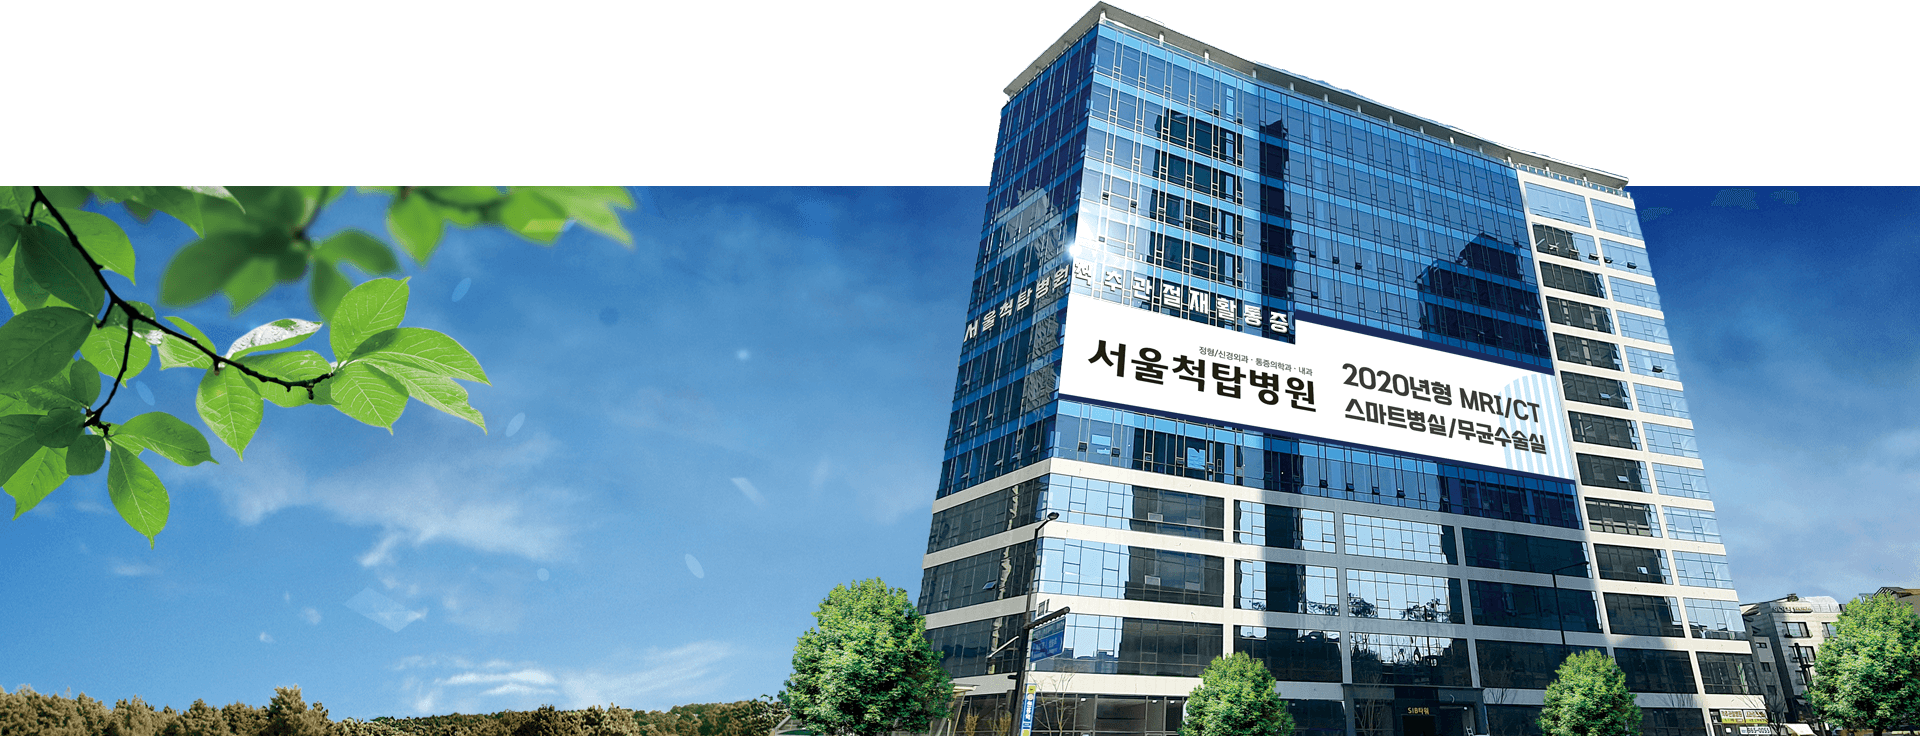 서울 척탑병원 건물 전경